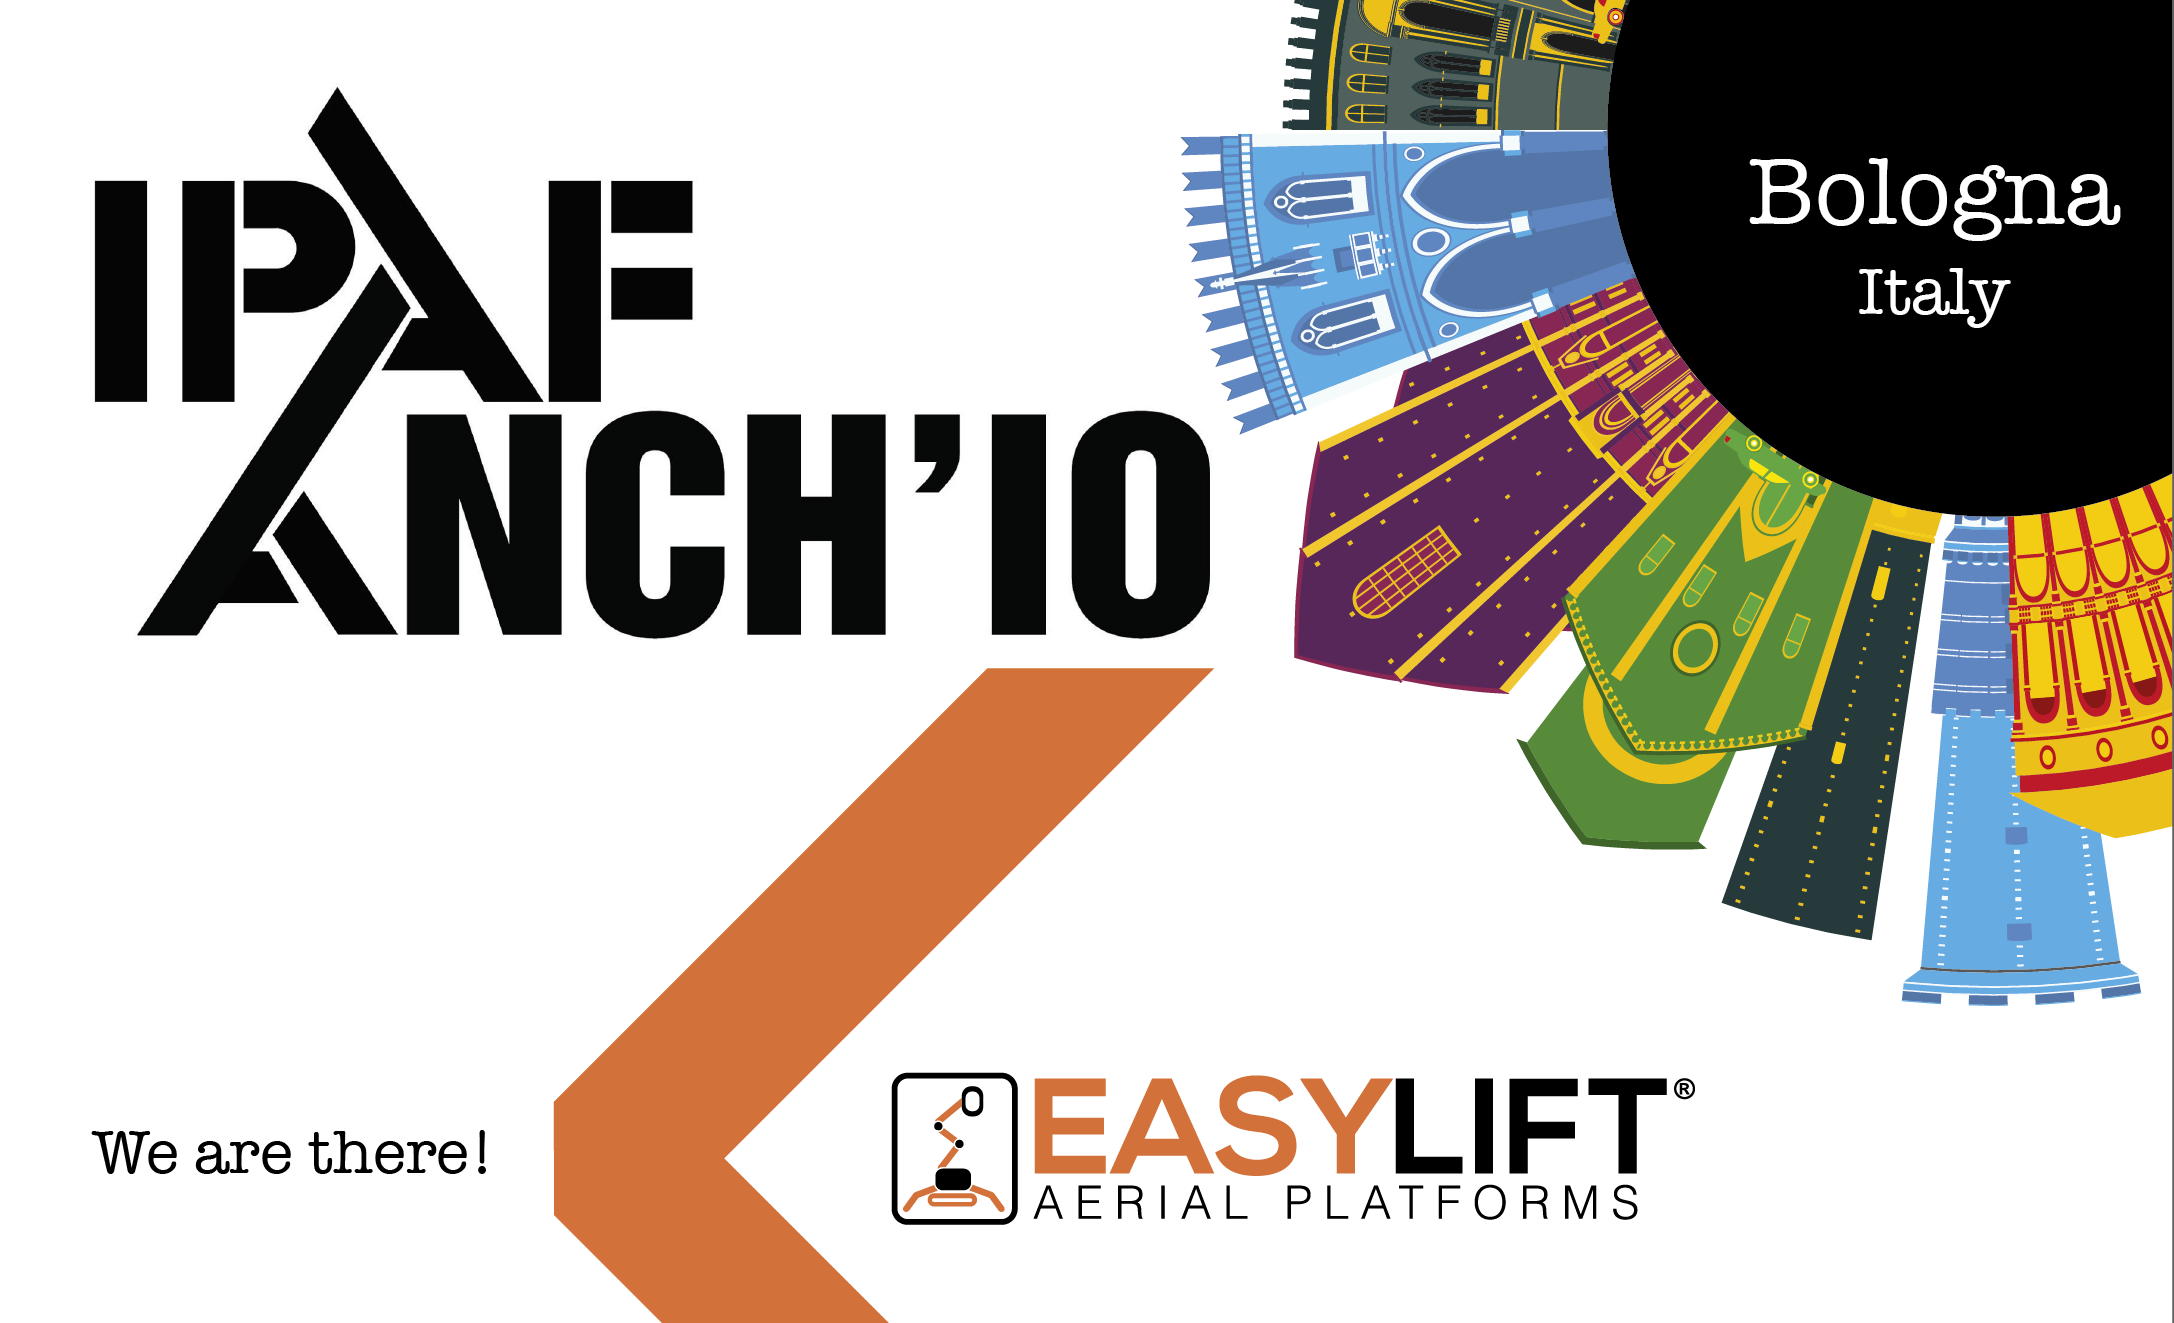 ¡Easy Lift participará en el evento IPAF ANCH’IO 2022!